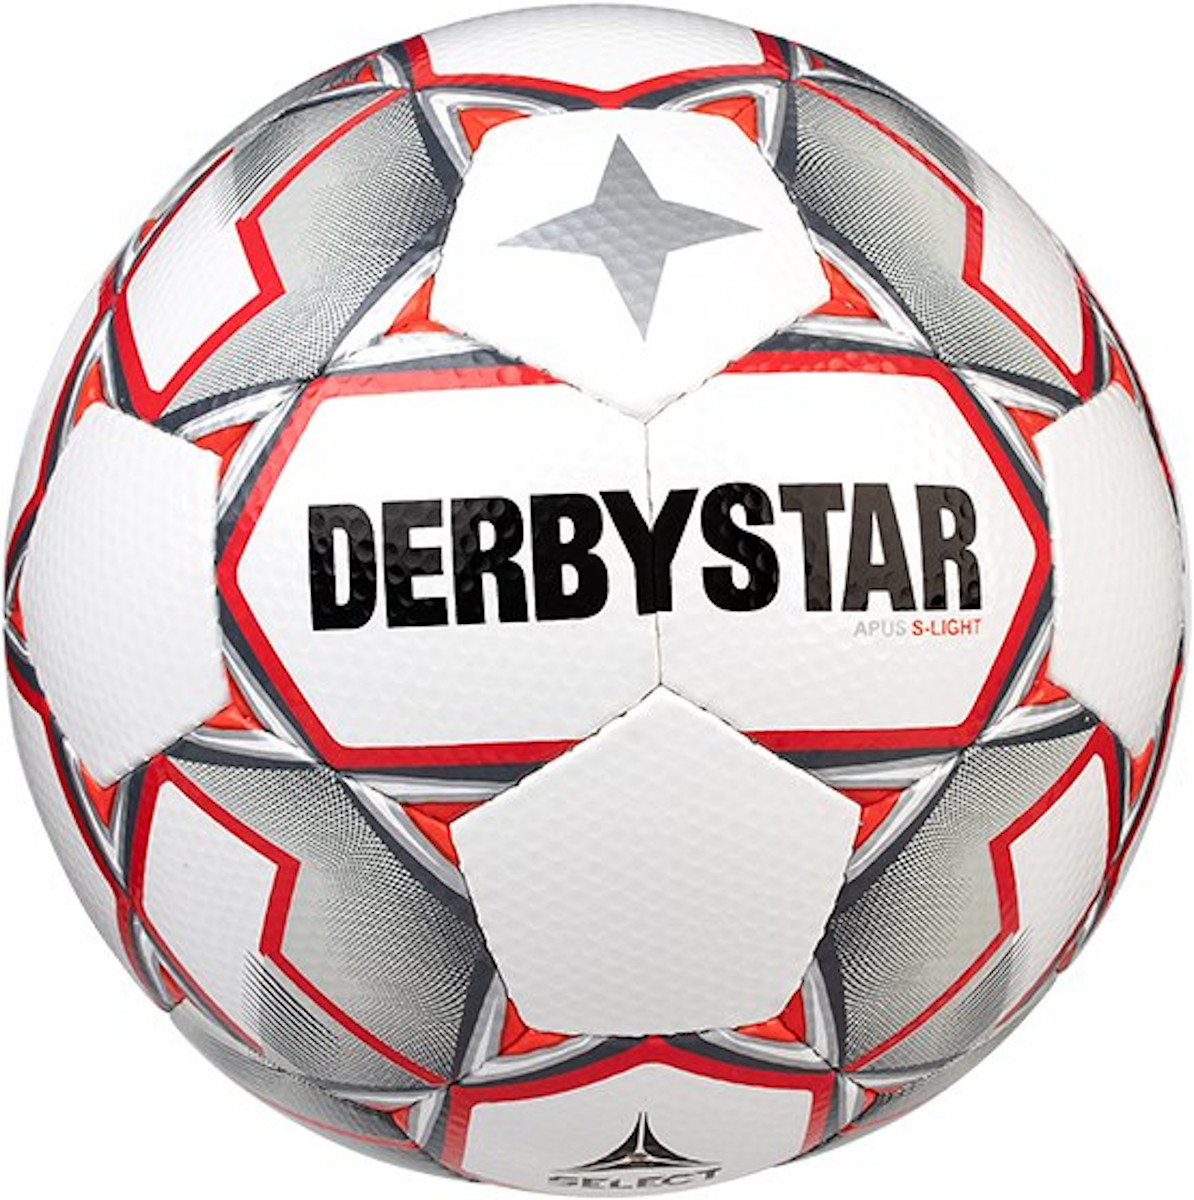 Ballon Derbystar Apus S-Light v20 290 grams Lightball